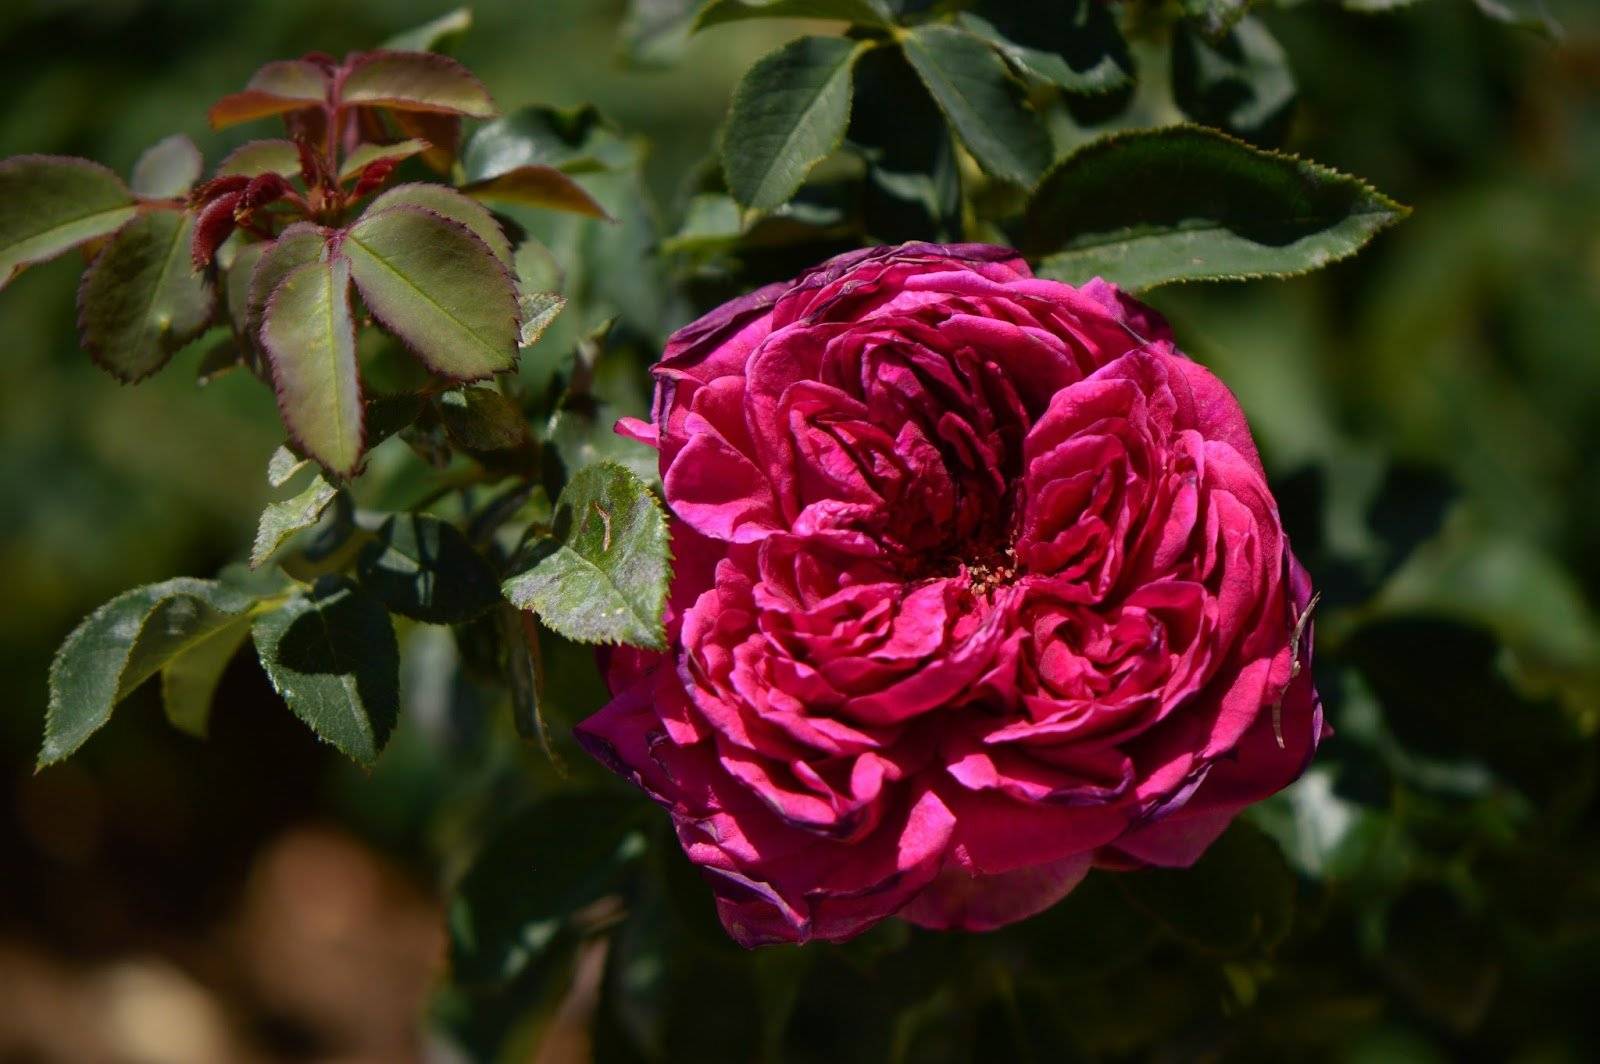 Описание розы джеймс галвей из коллекции остина- что это за сорт, как выращивать